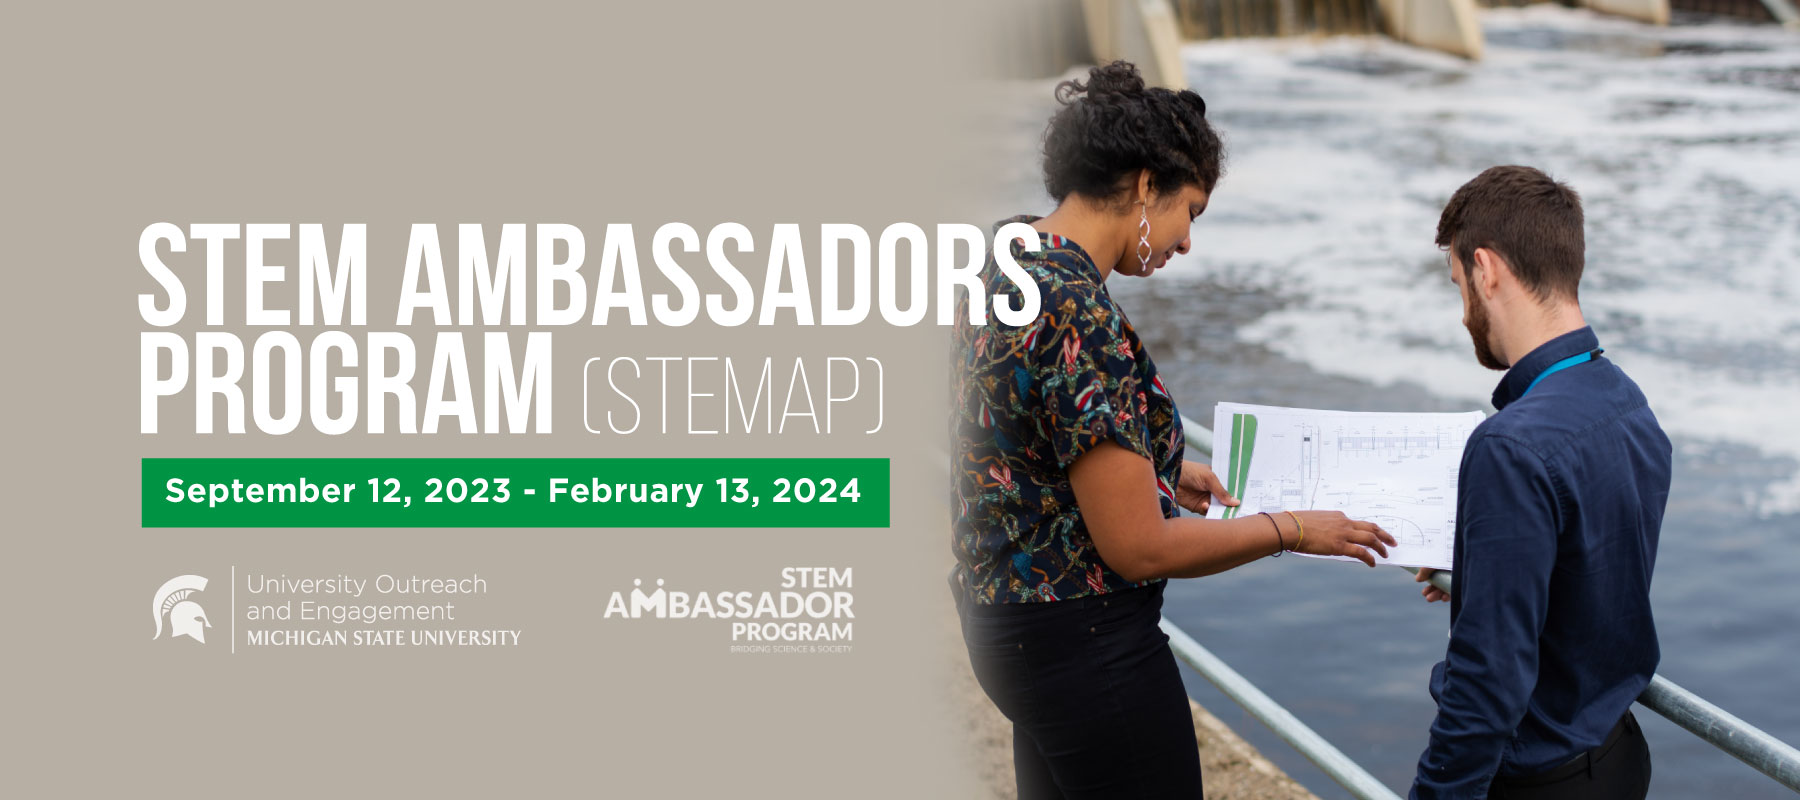 STEM Ambassadors Program (STEMAP) September 12, 2023 - February 13, 2024